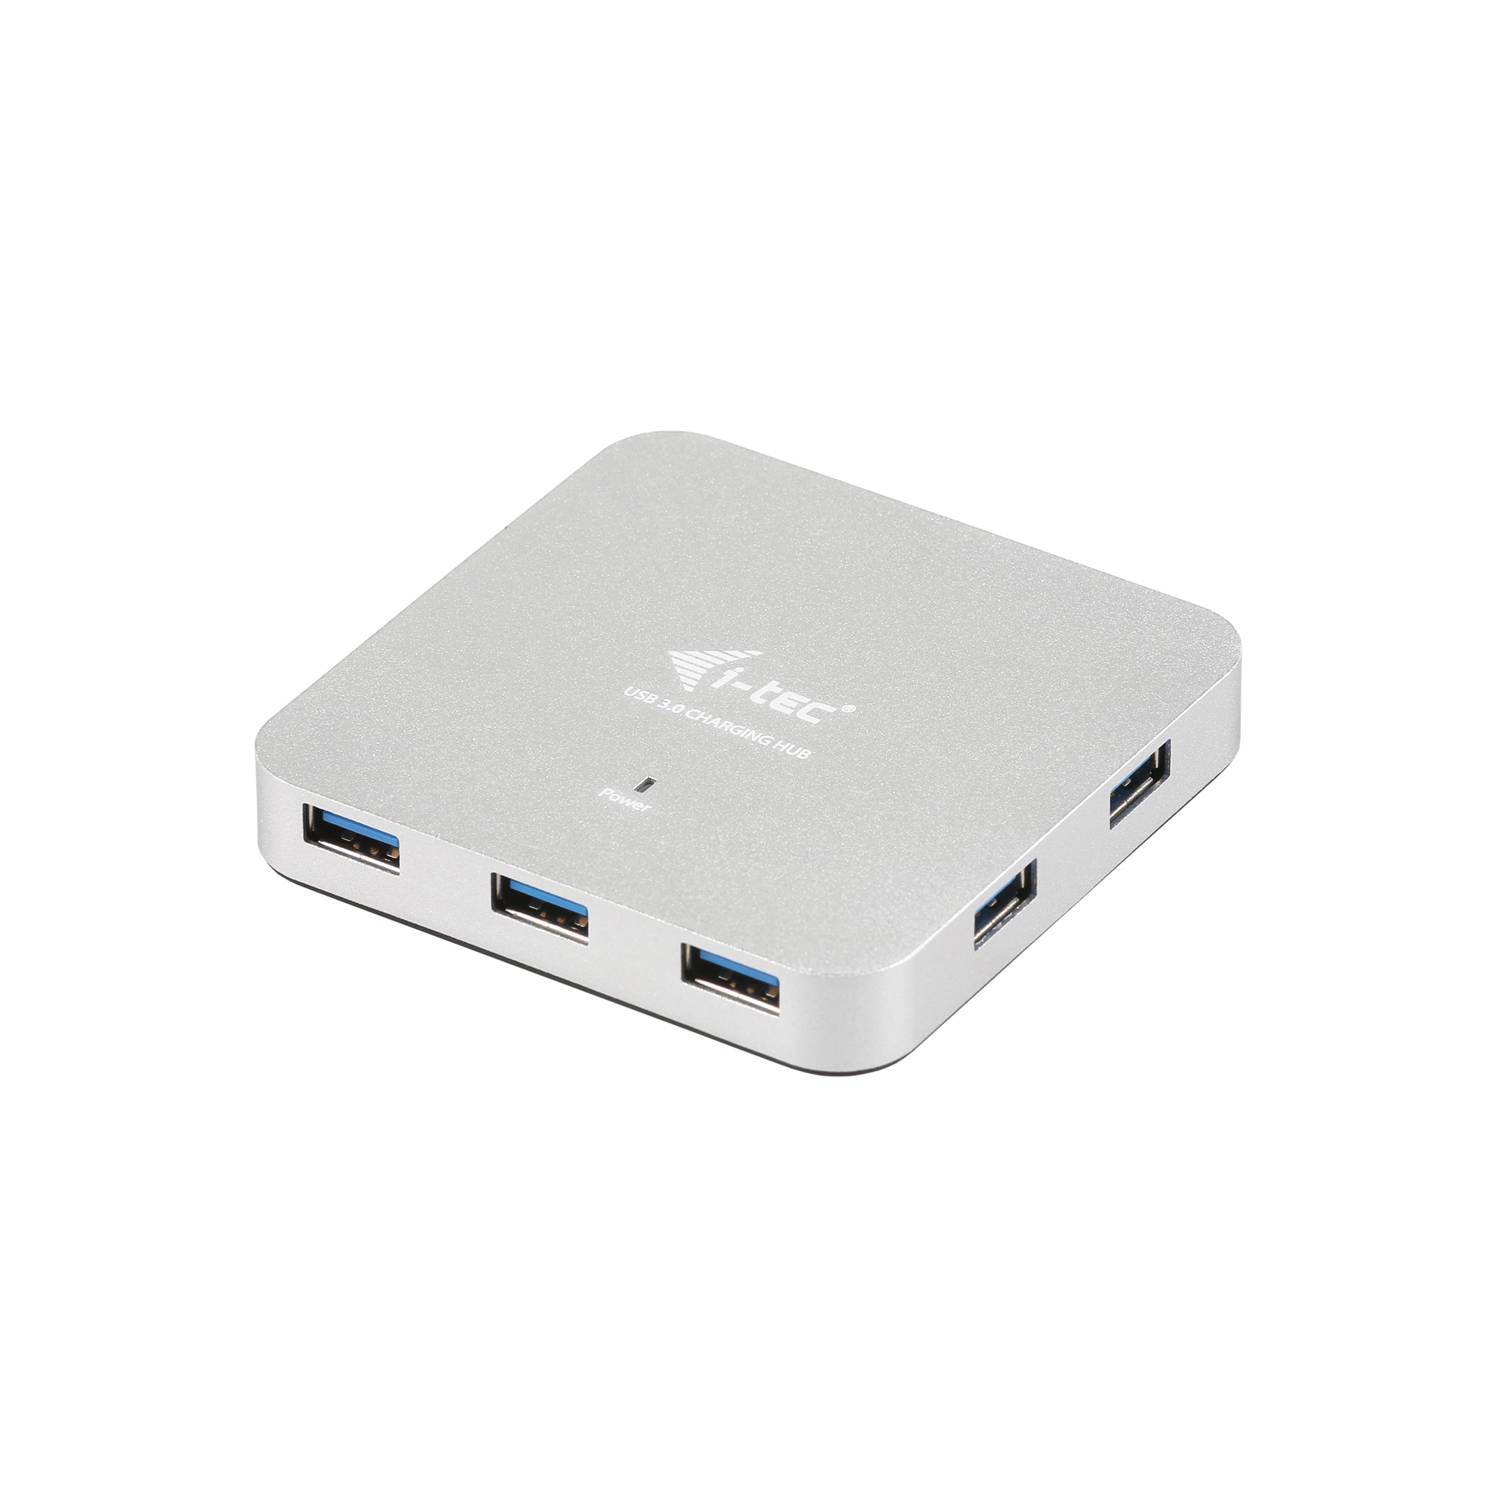 Rca Informatique - Image du produit : I-TEC METAL ACTIVE HUB 7 PORT USB 3.0 WITH PS WIN MAC OS